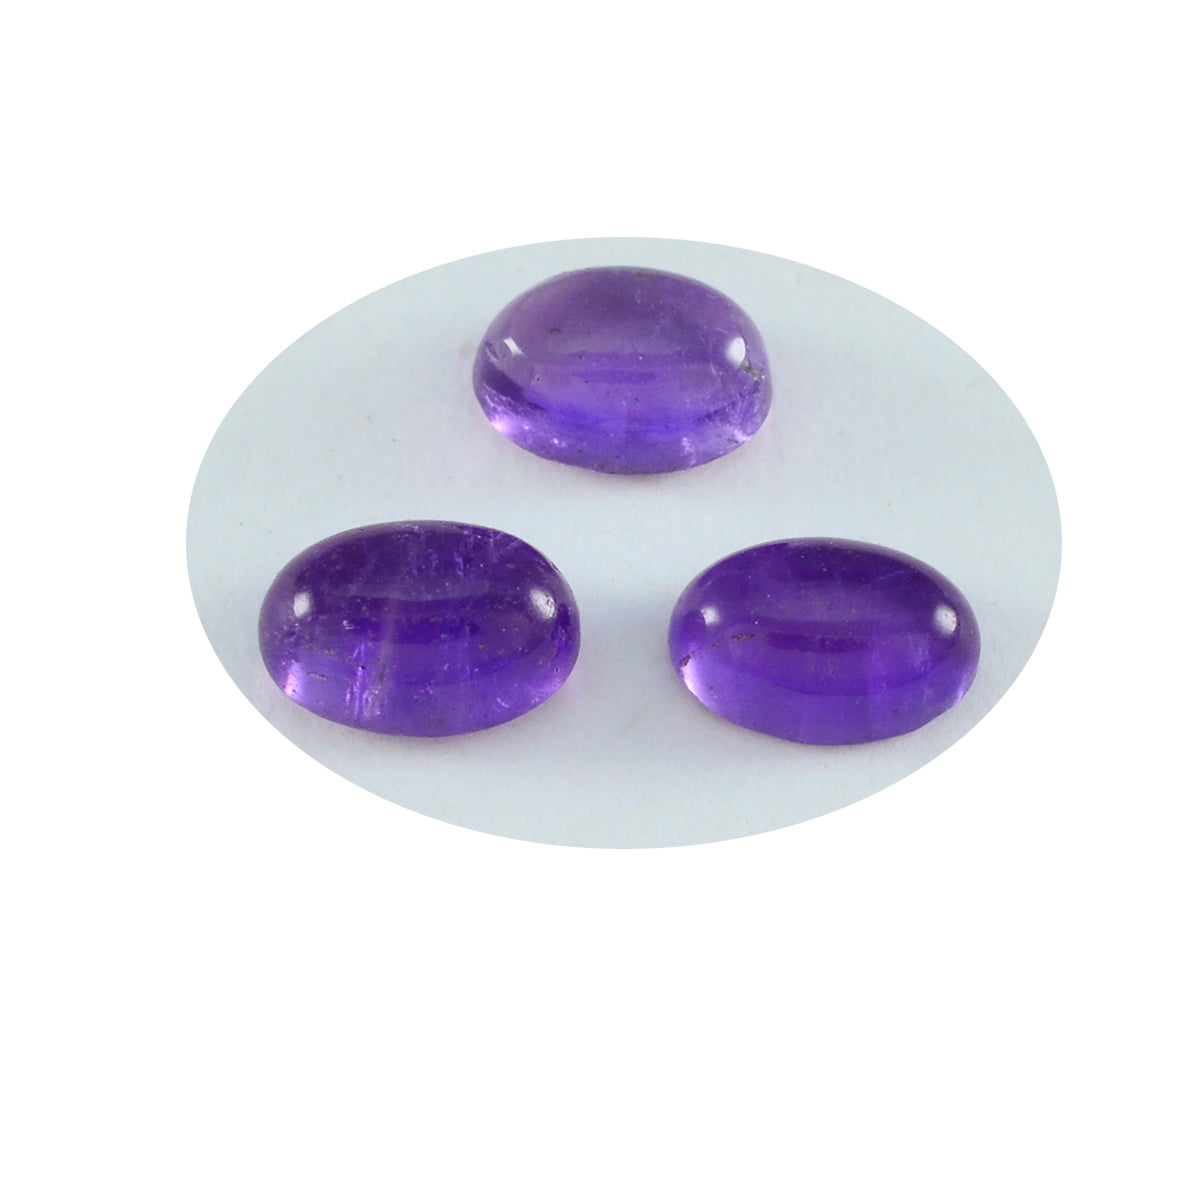 Riyogems 1PC Purple Amethyst Cabochon 6x8 mm Oval Shape beautiful Quality Loose Gem